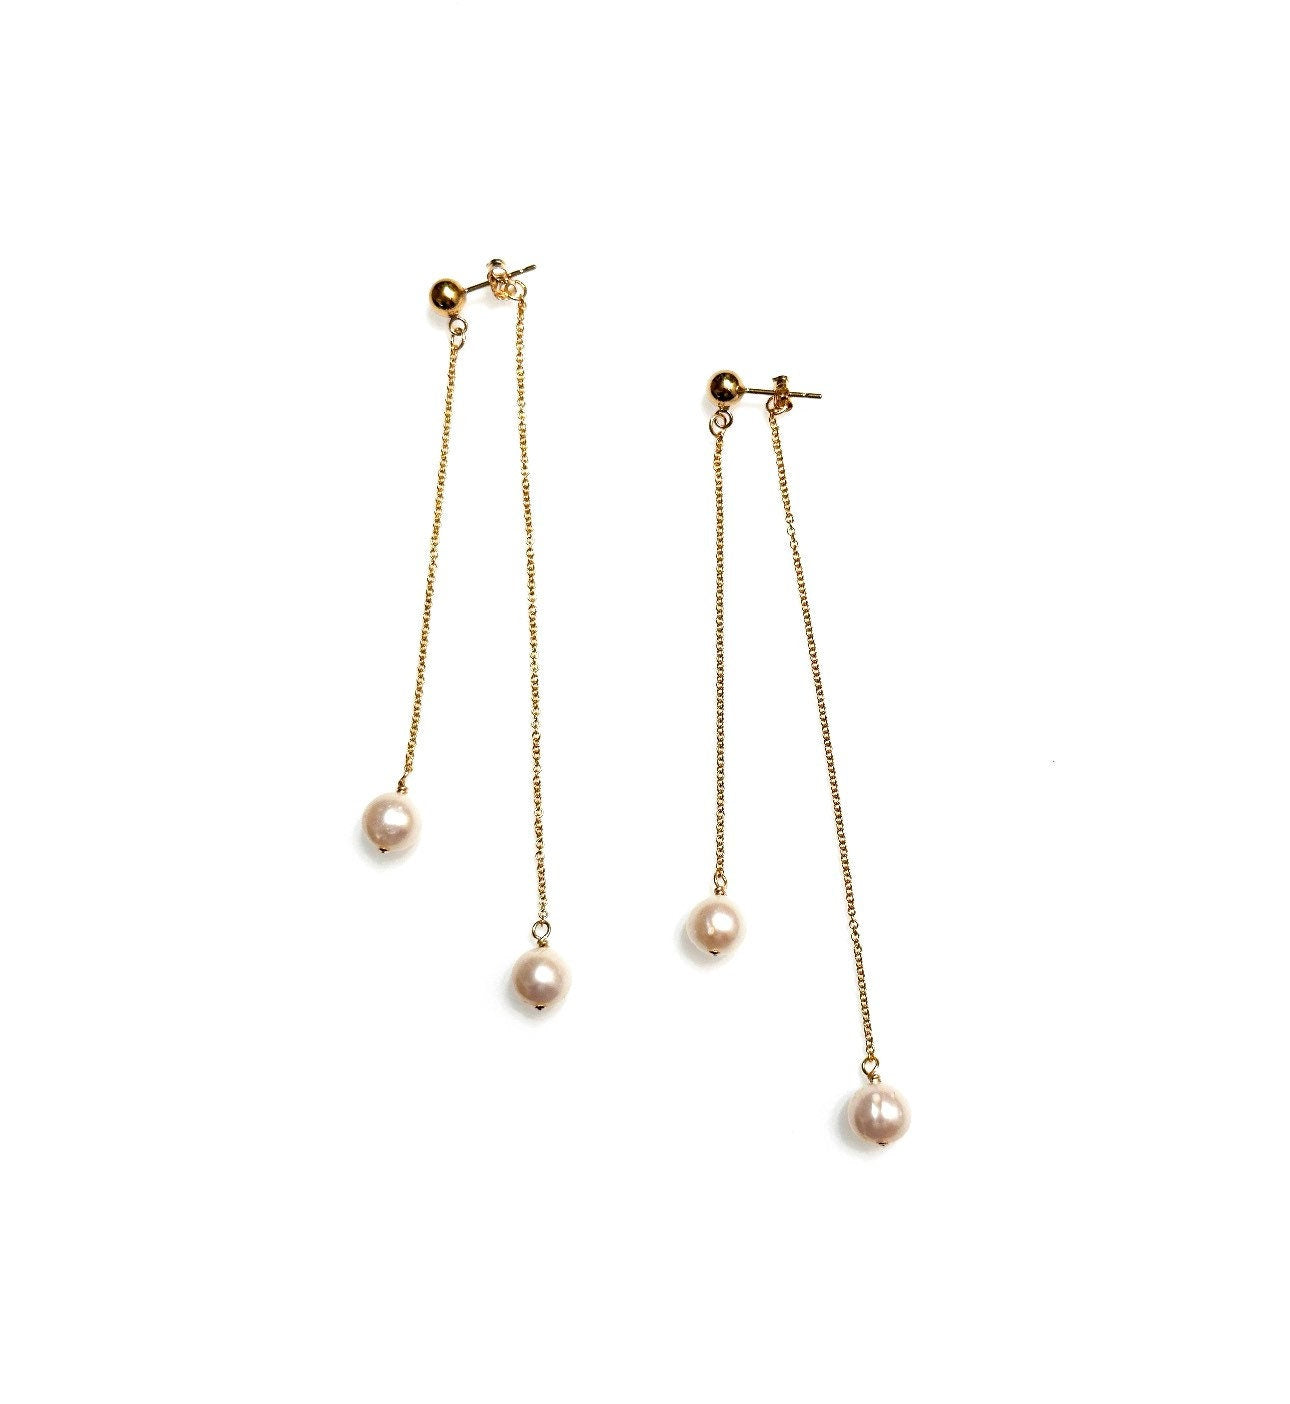 Double-sided dangly pearl earrings